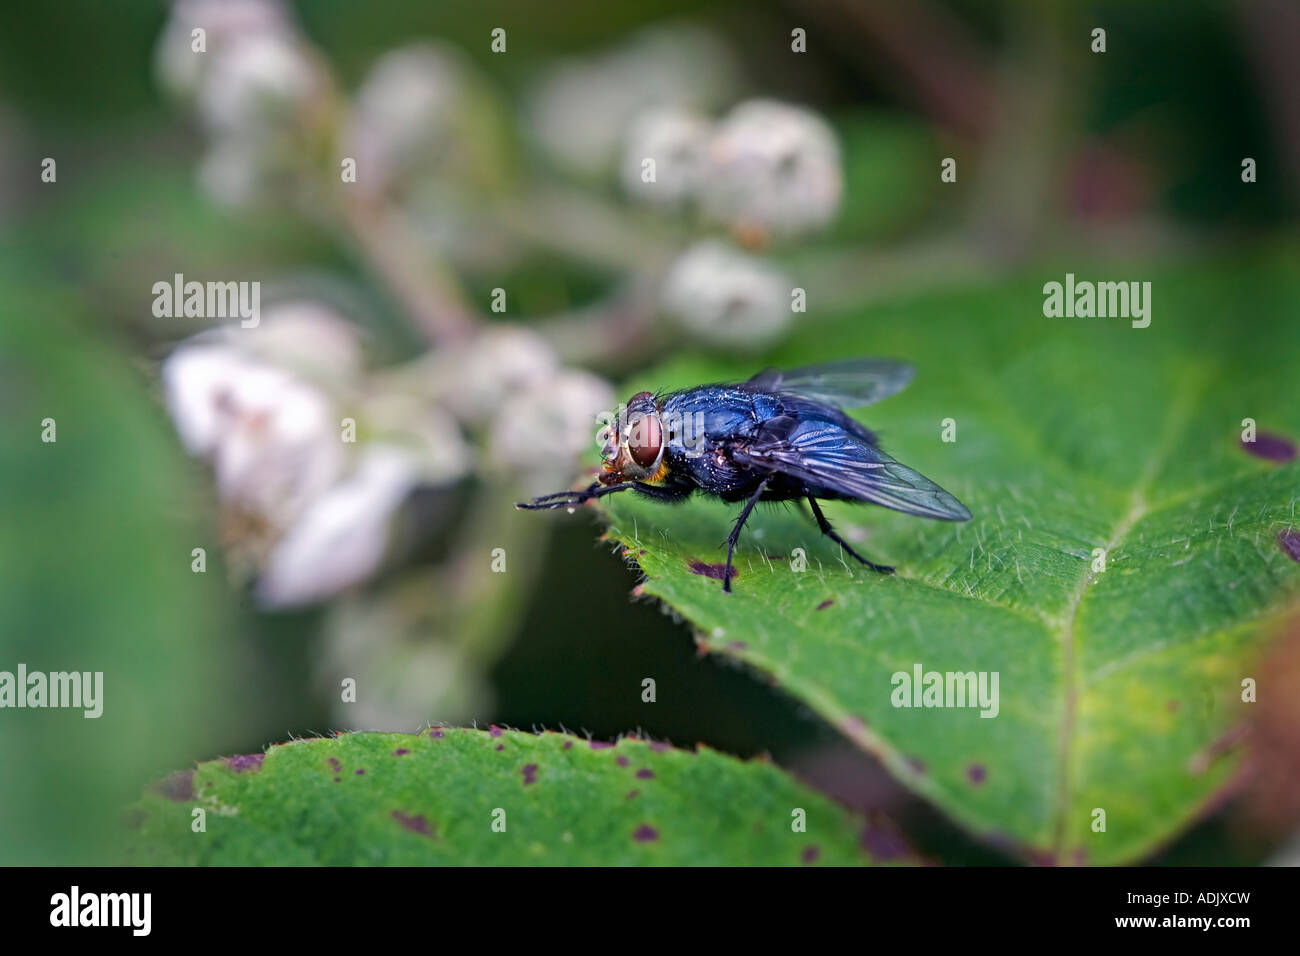 Blue bottle fly, Calliphora vomitoria. Stock Photo